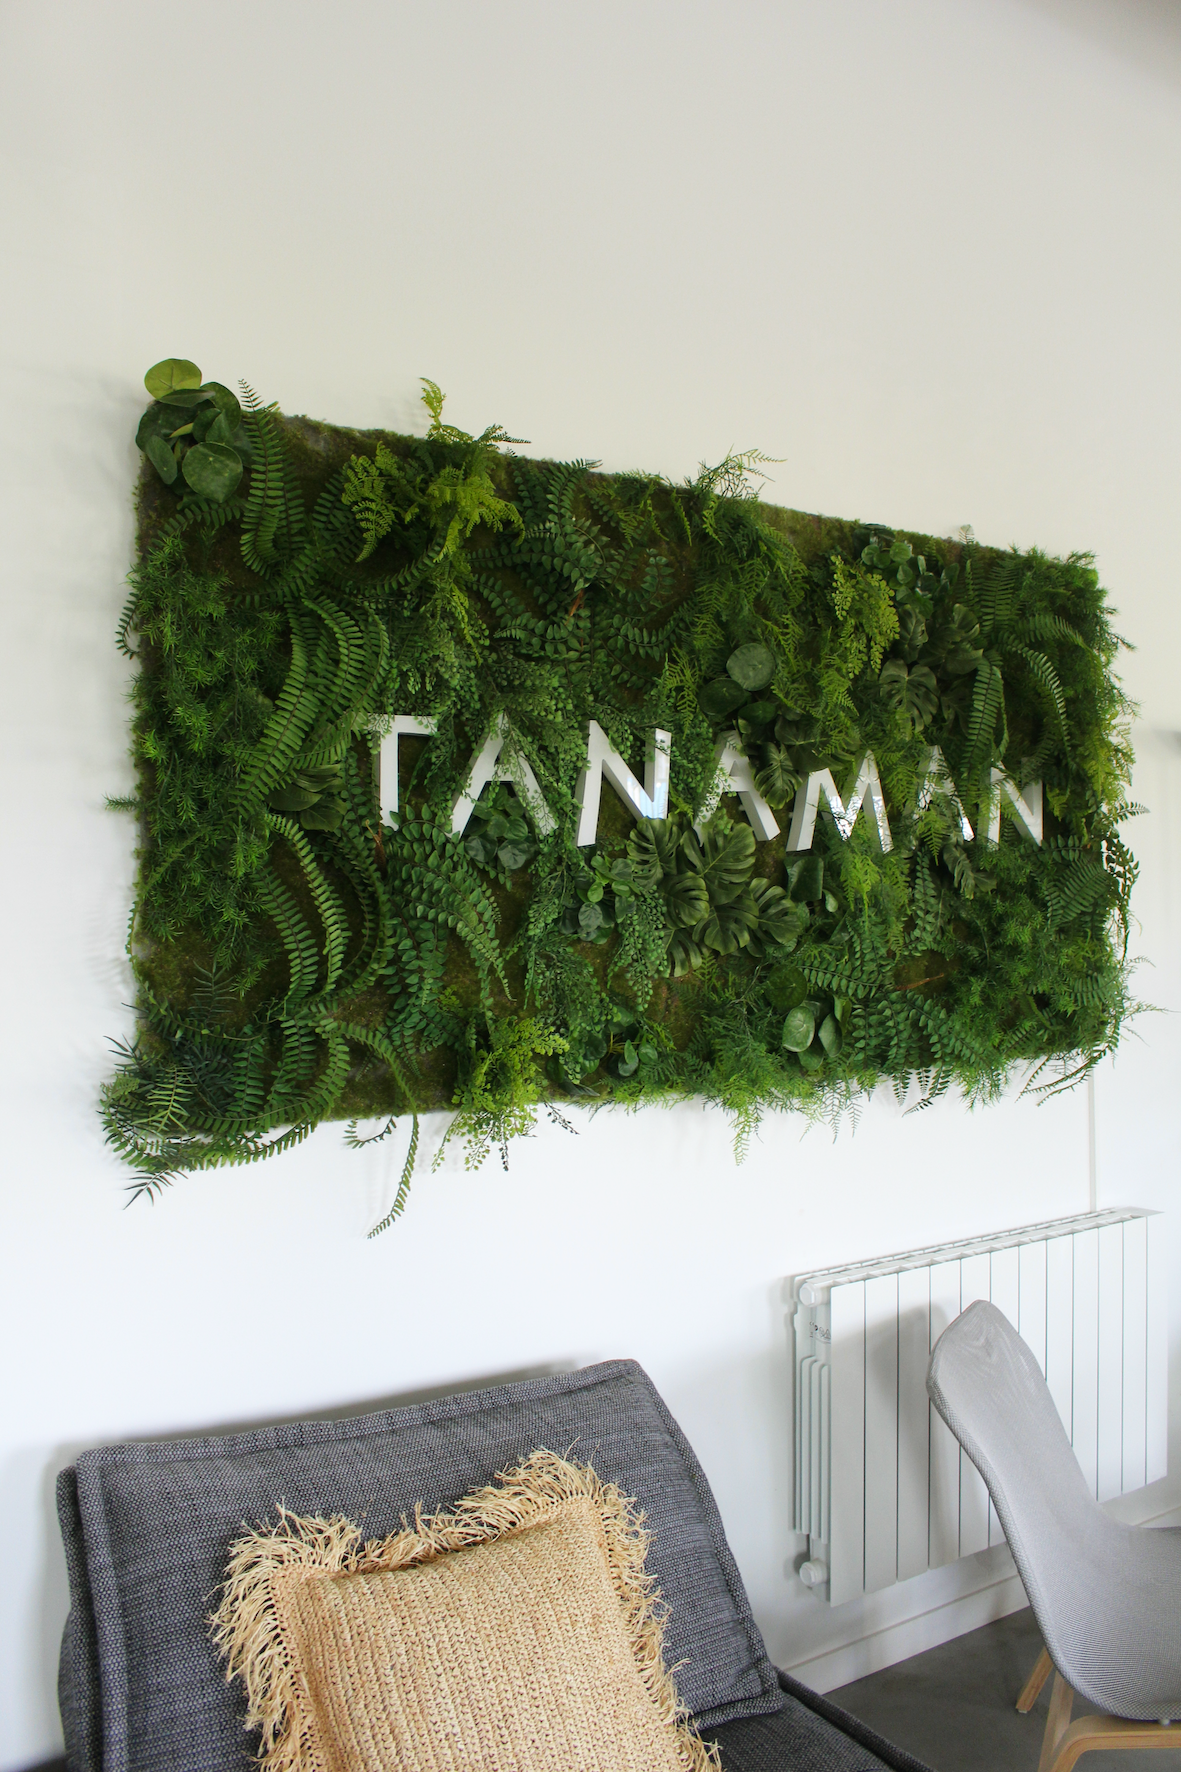 Mur végétal avec logo lumineux de l'entreprise Tanaman